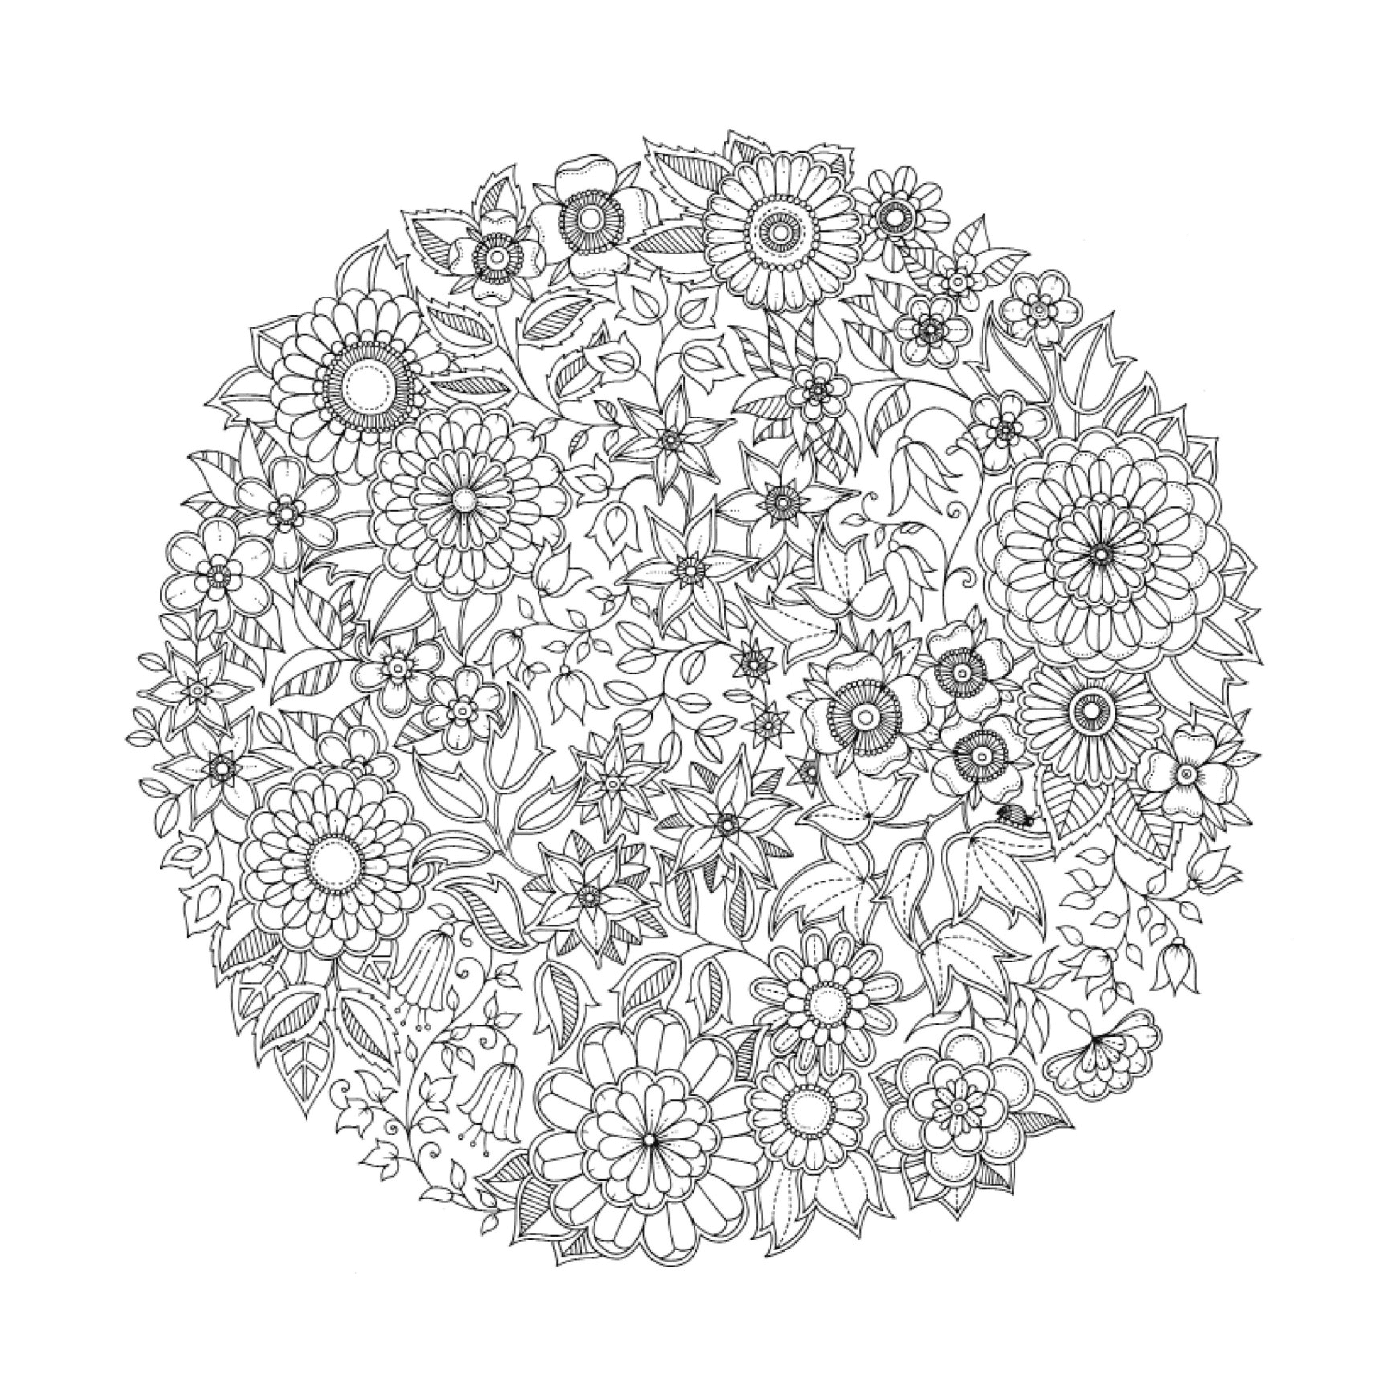  um padrão circular de flores em preto e branco difícil de identificar 